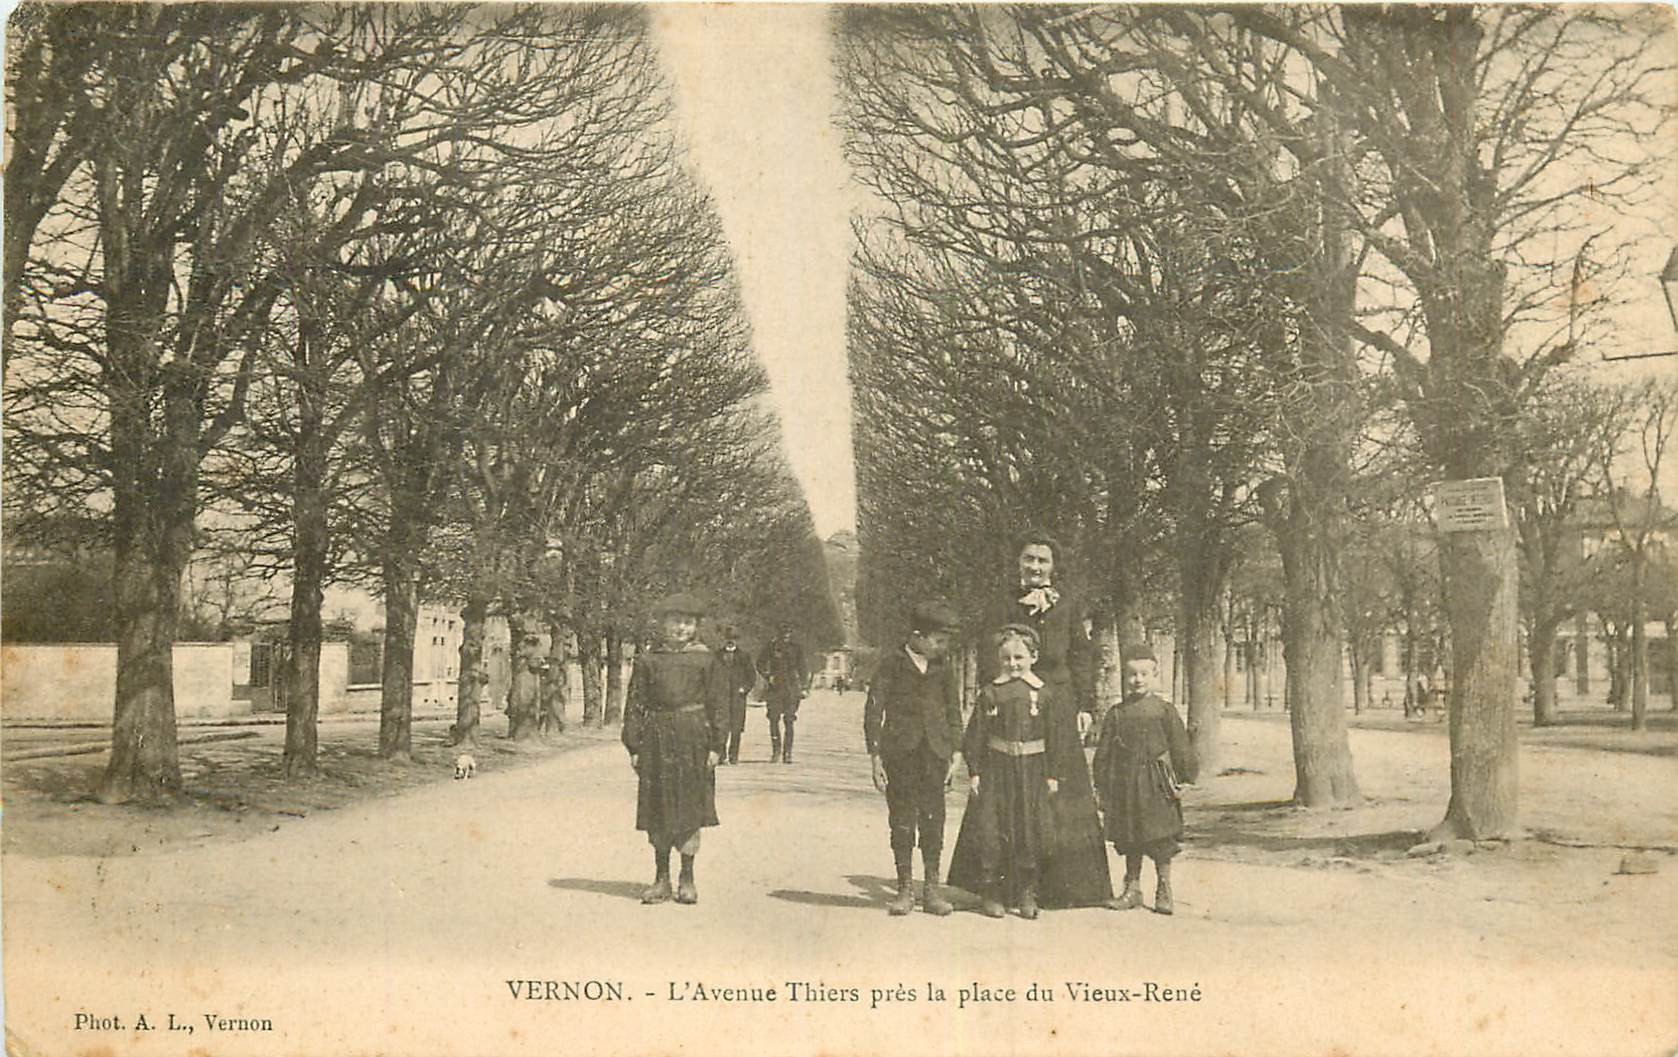 WW 27 VERNON. Ecoliers sur l'Avenue Thiers près Place du Vieux-René 1905